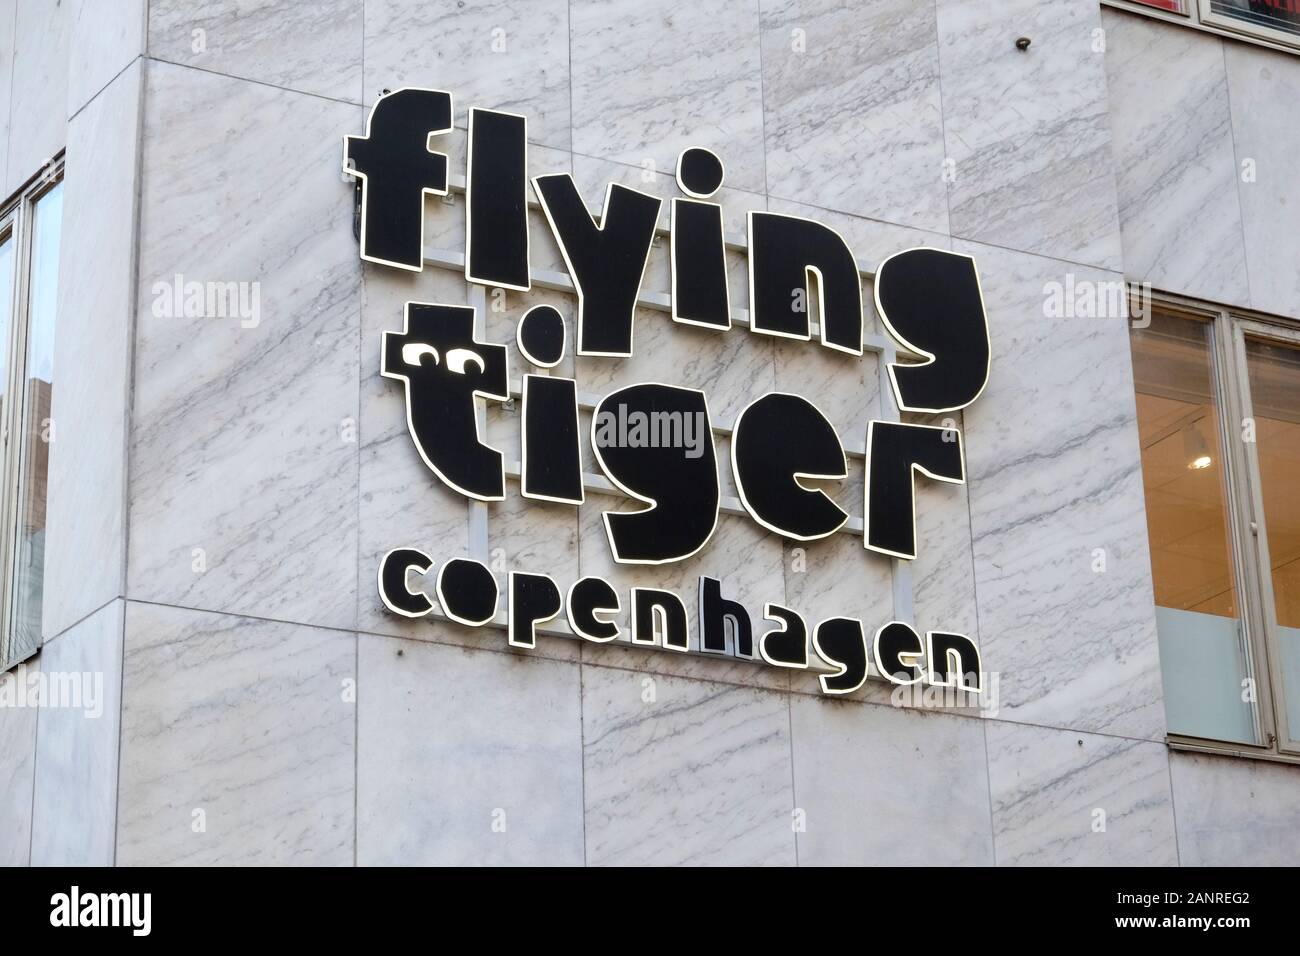 El tigre volador firma de la tienda de Copenhague, Basilea, Suiza Foto de stock